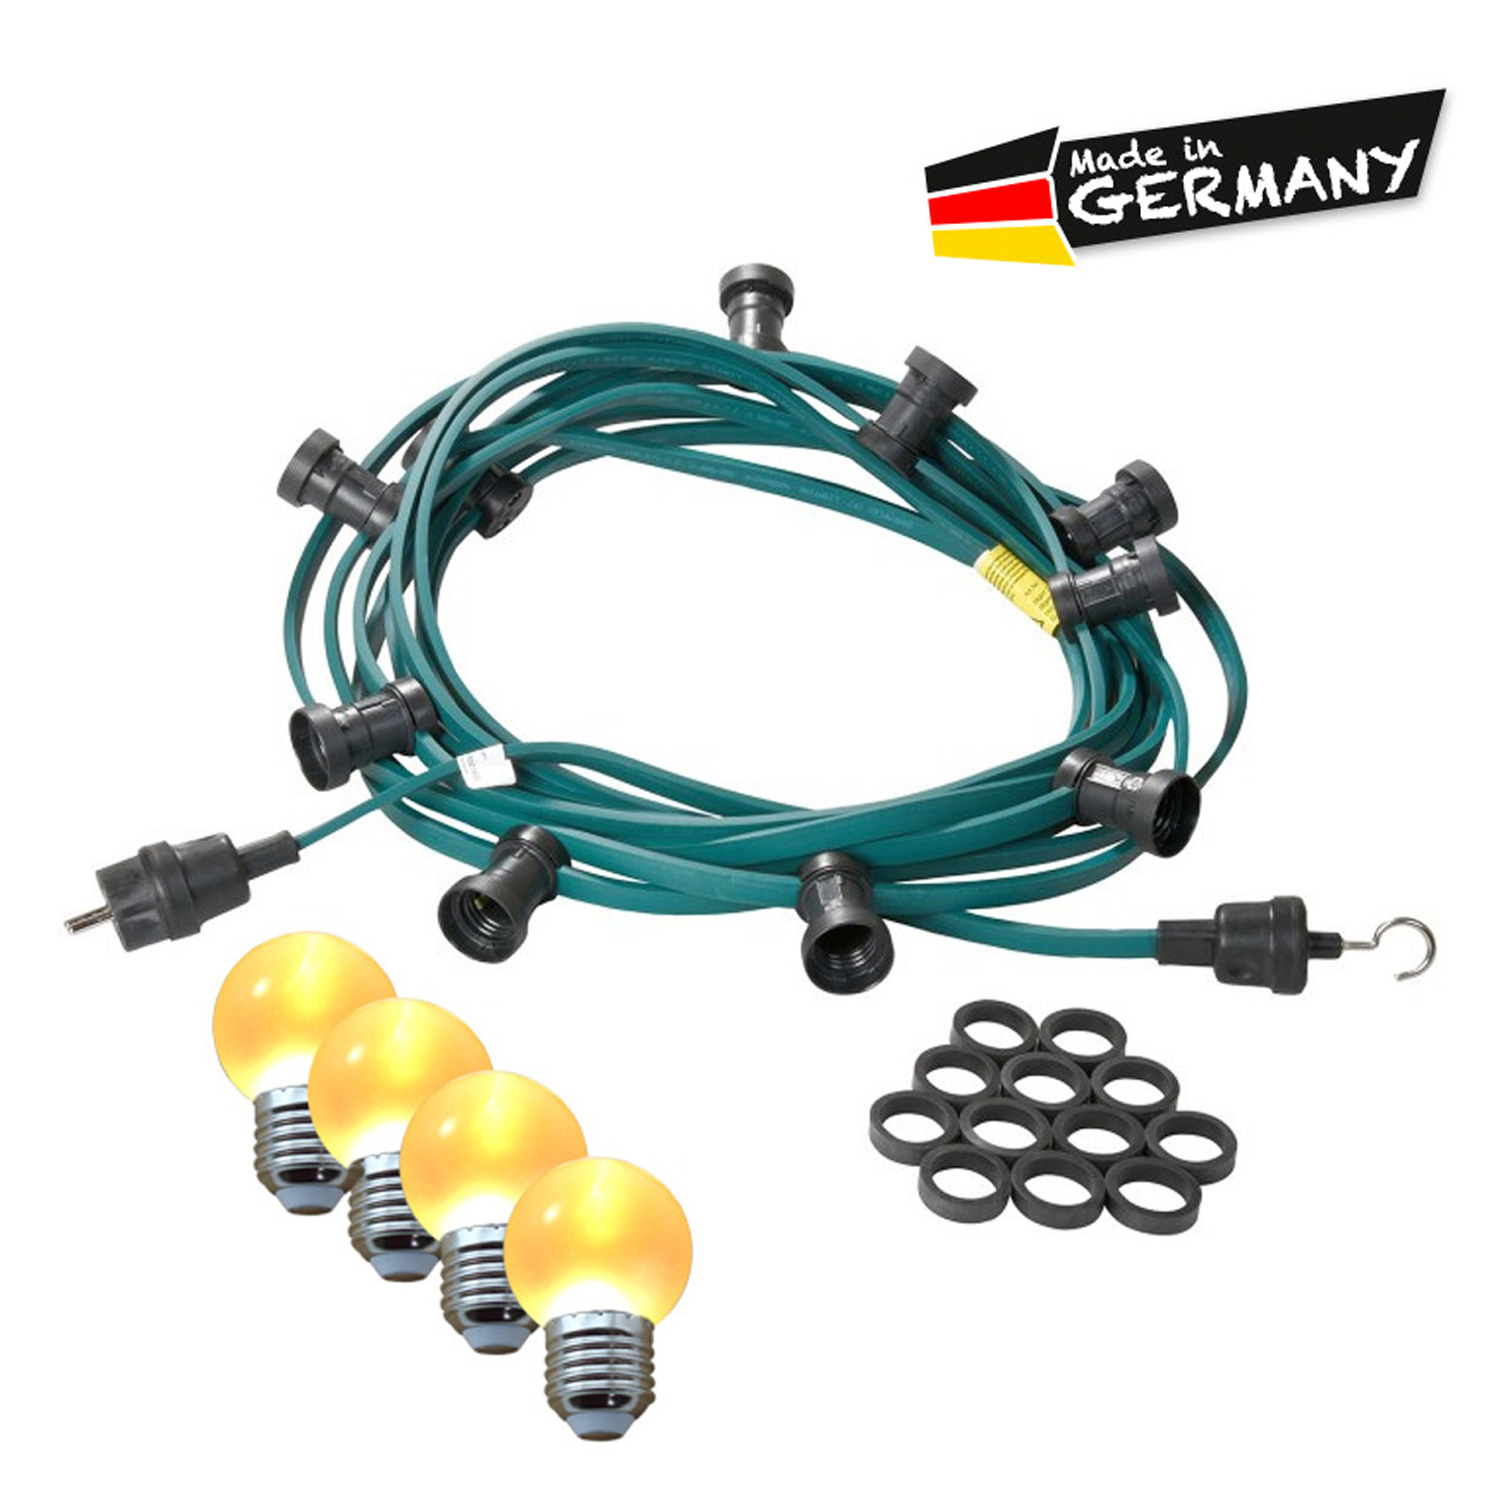 Illu-/Partylichterkette 30m | Außenlichterkette | Made in Germany | 50 x ultra-warmweisse LED Kugeln